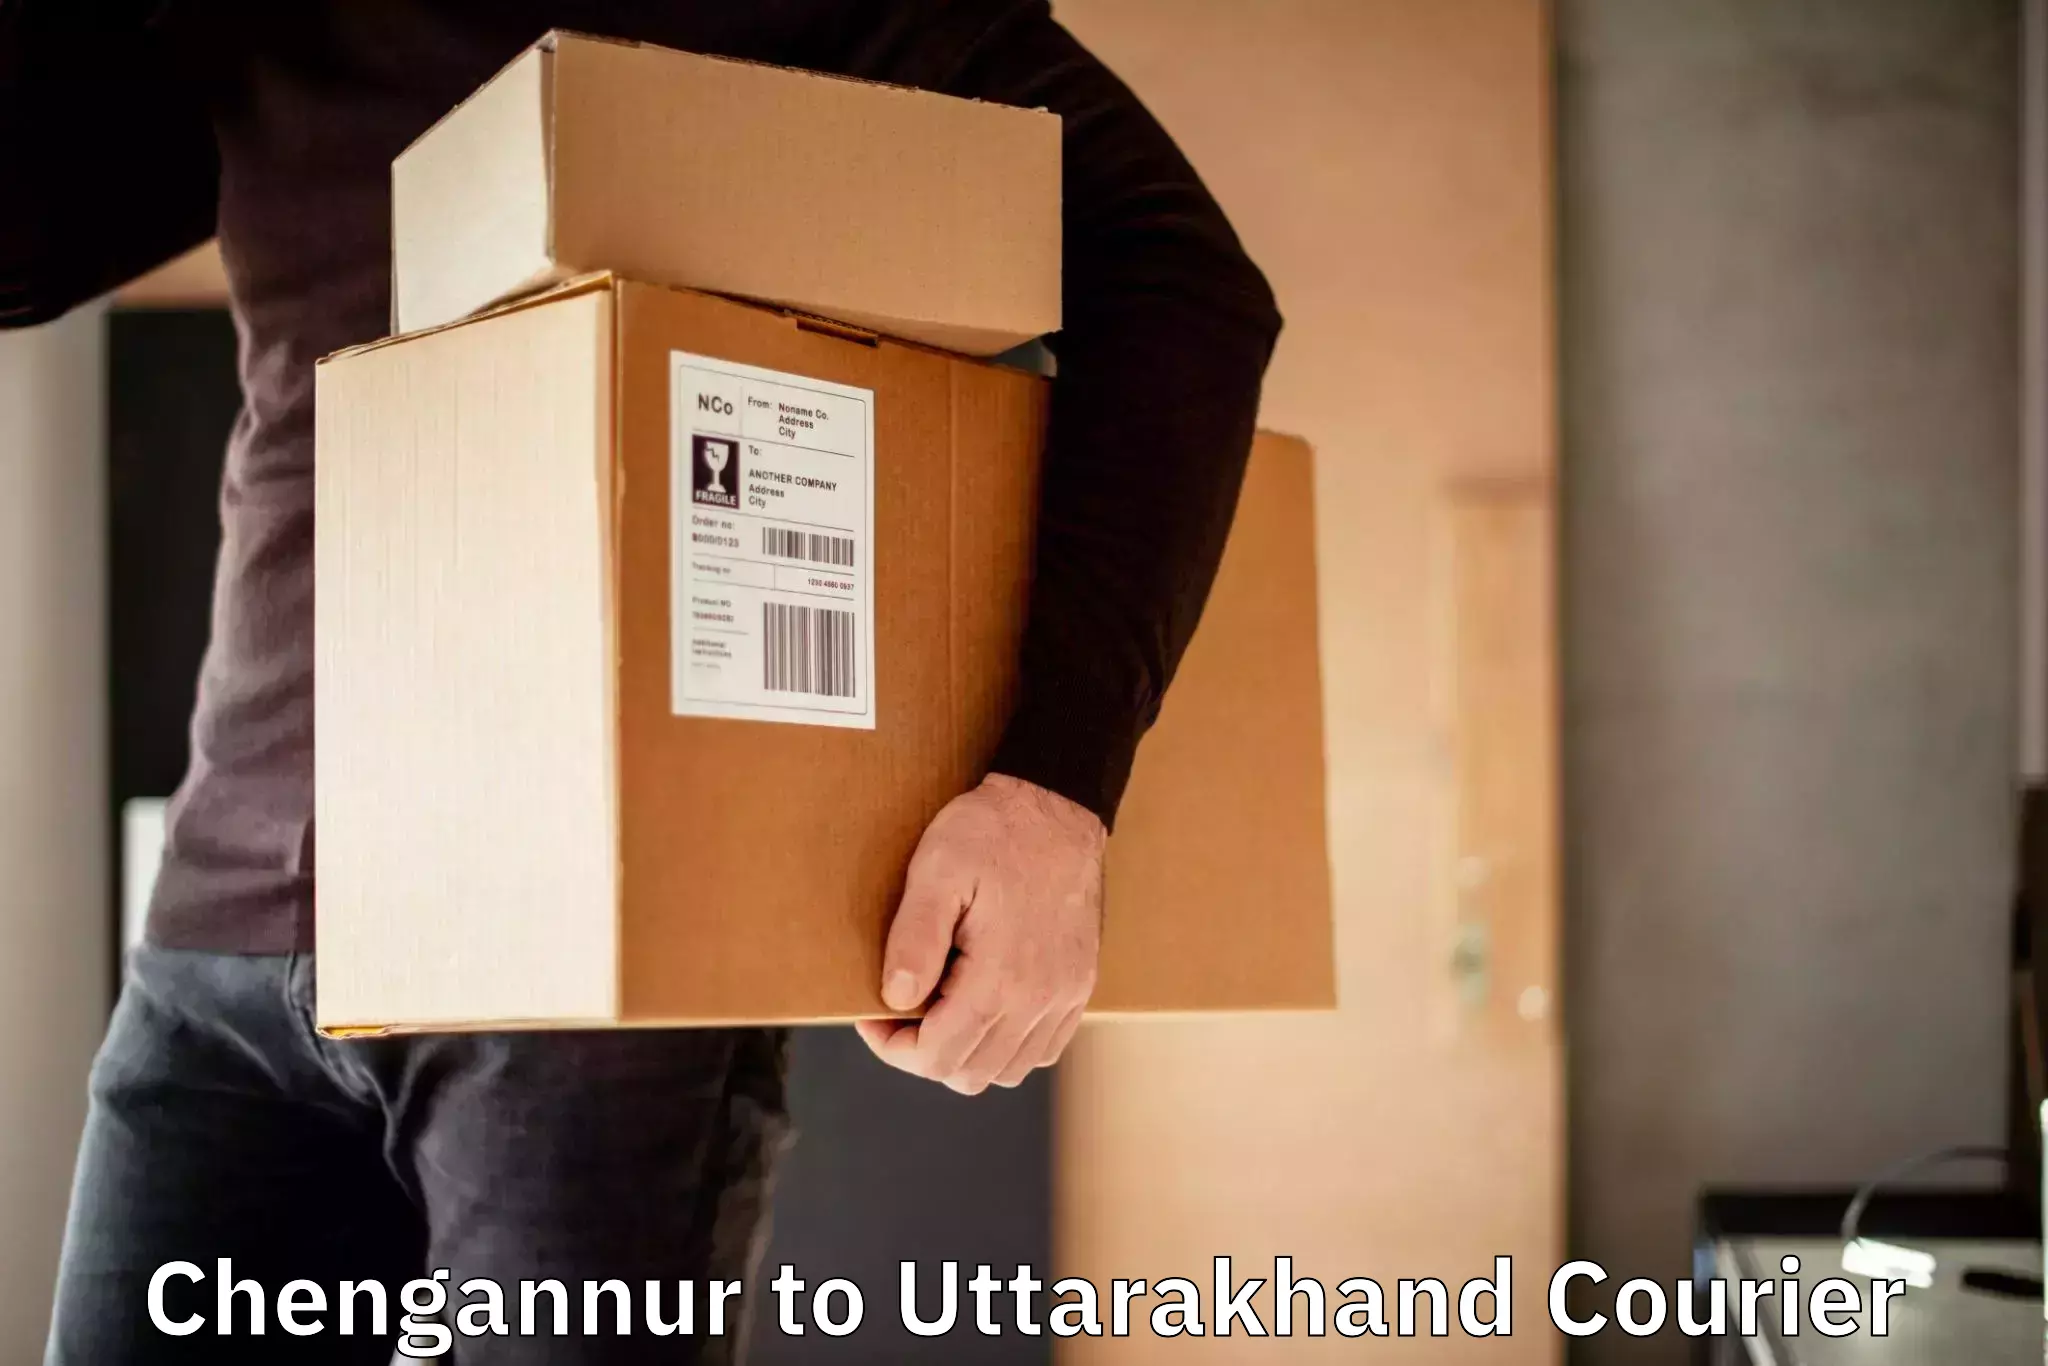 Modern courier technology Chengannur to Uttarakhand